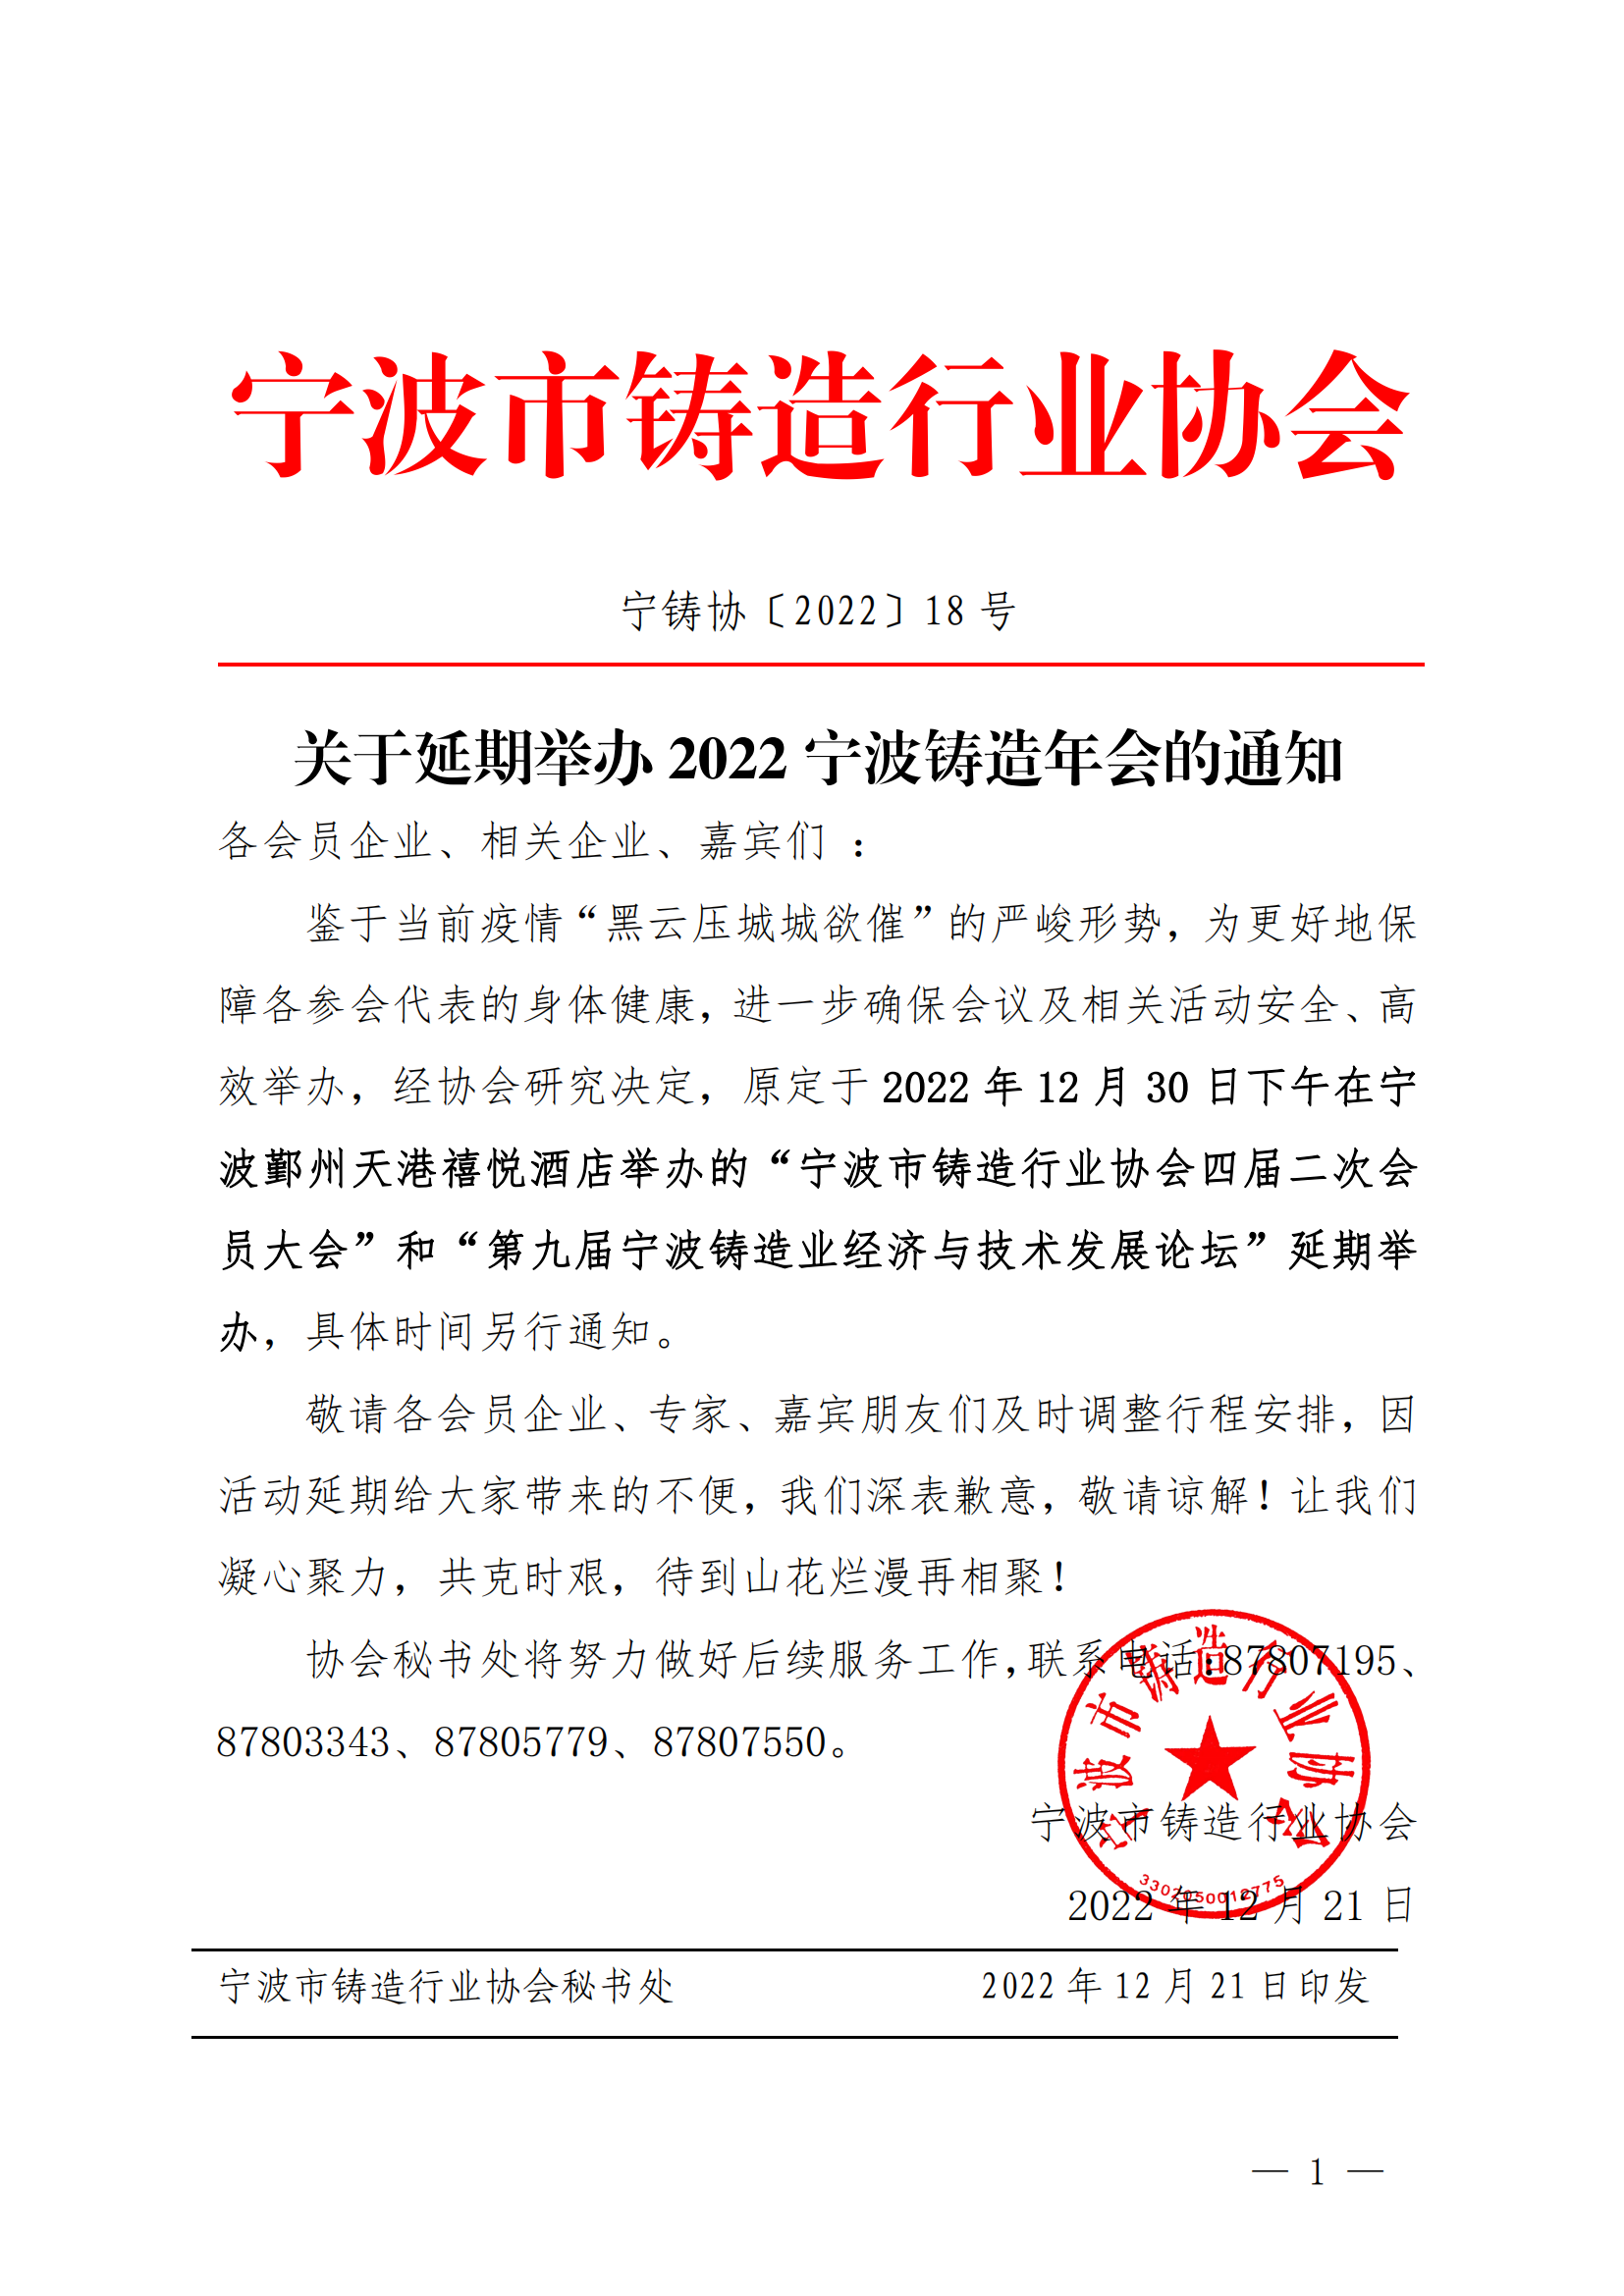 关于延期举办2022宁波铸造年会的通知(2)_00.png